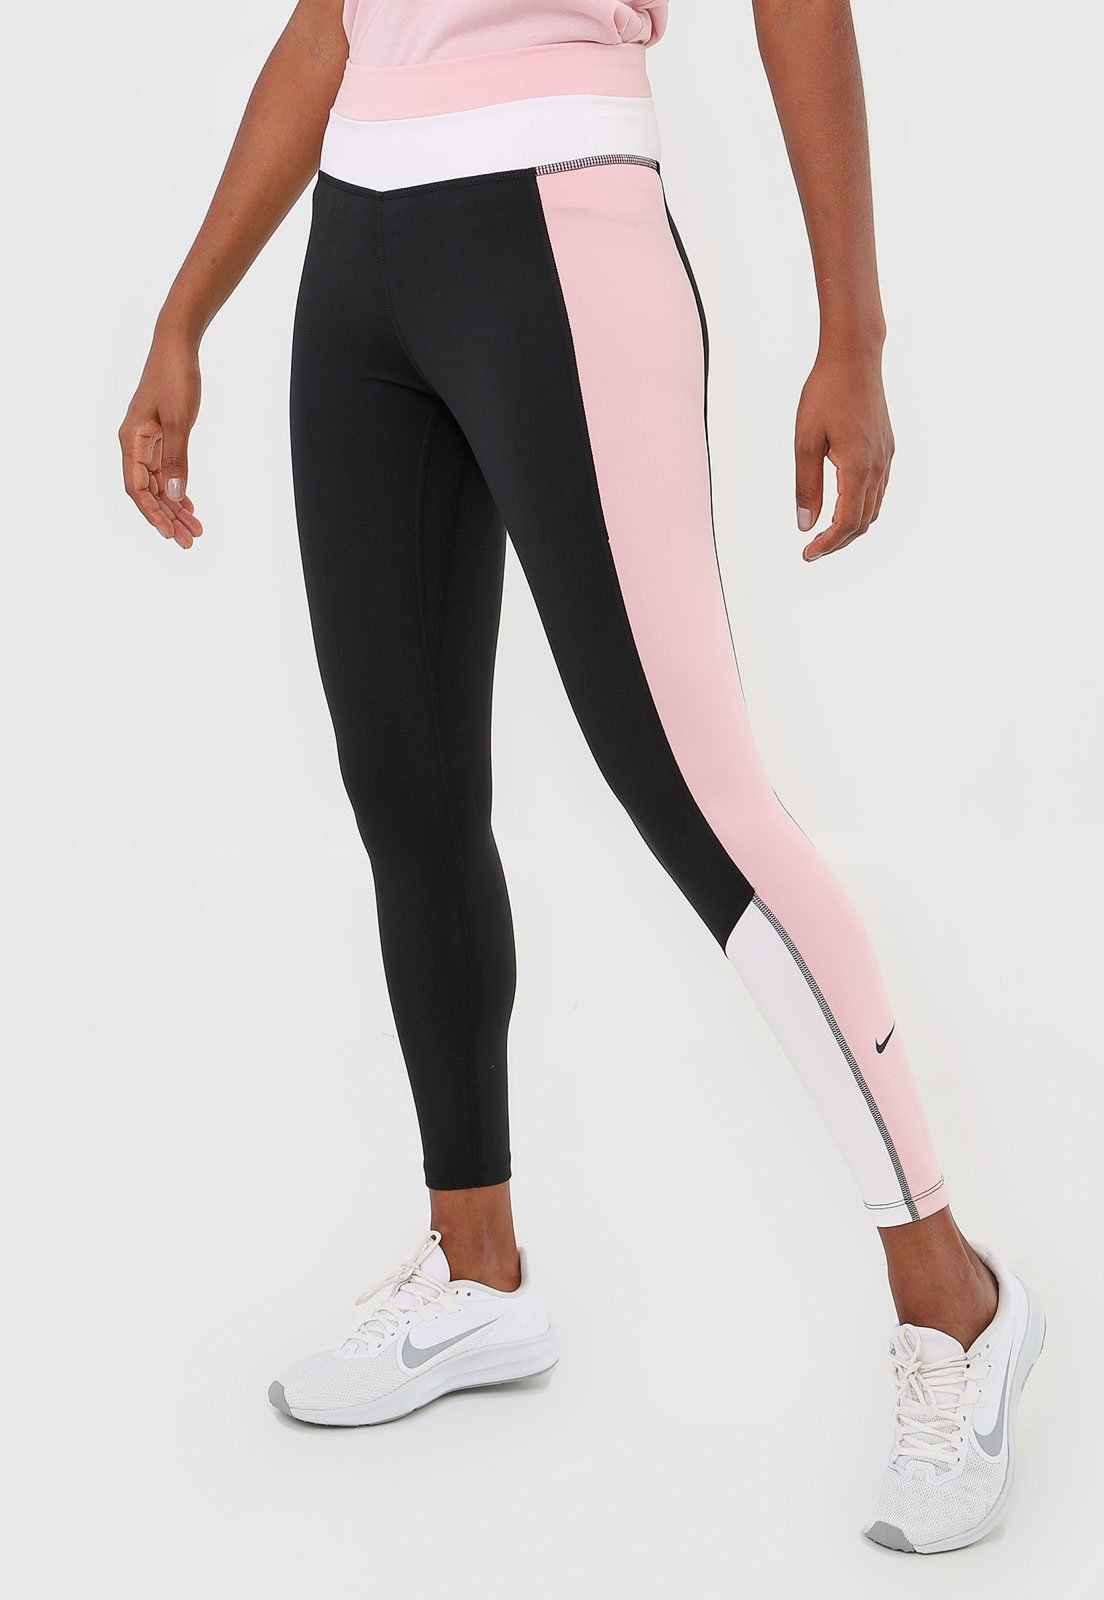 Legging Nike One Color Block Tight Preta/Rosa - Compre Agora